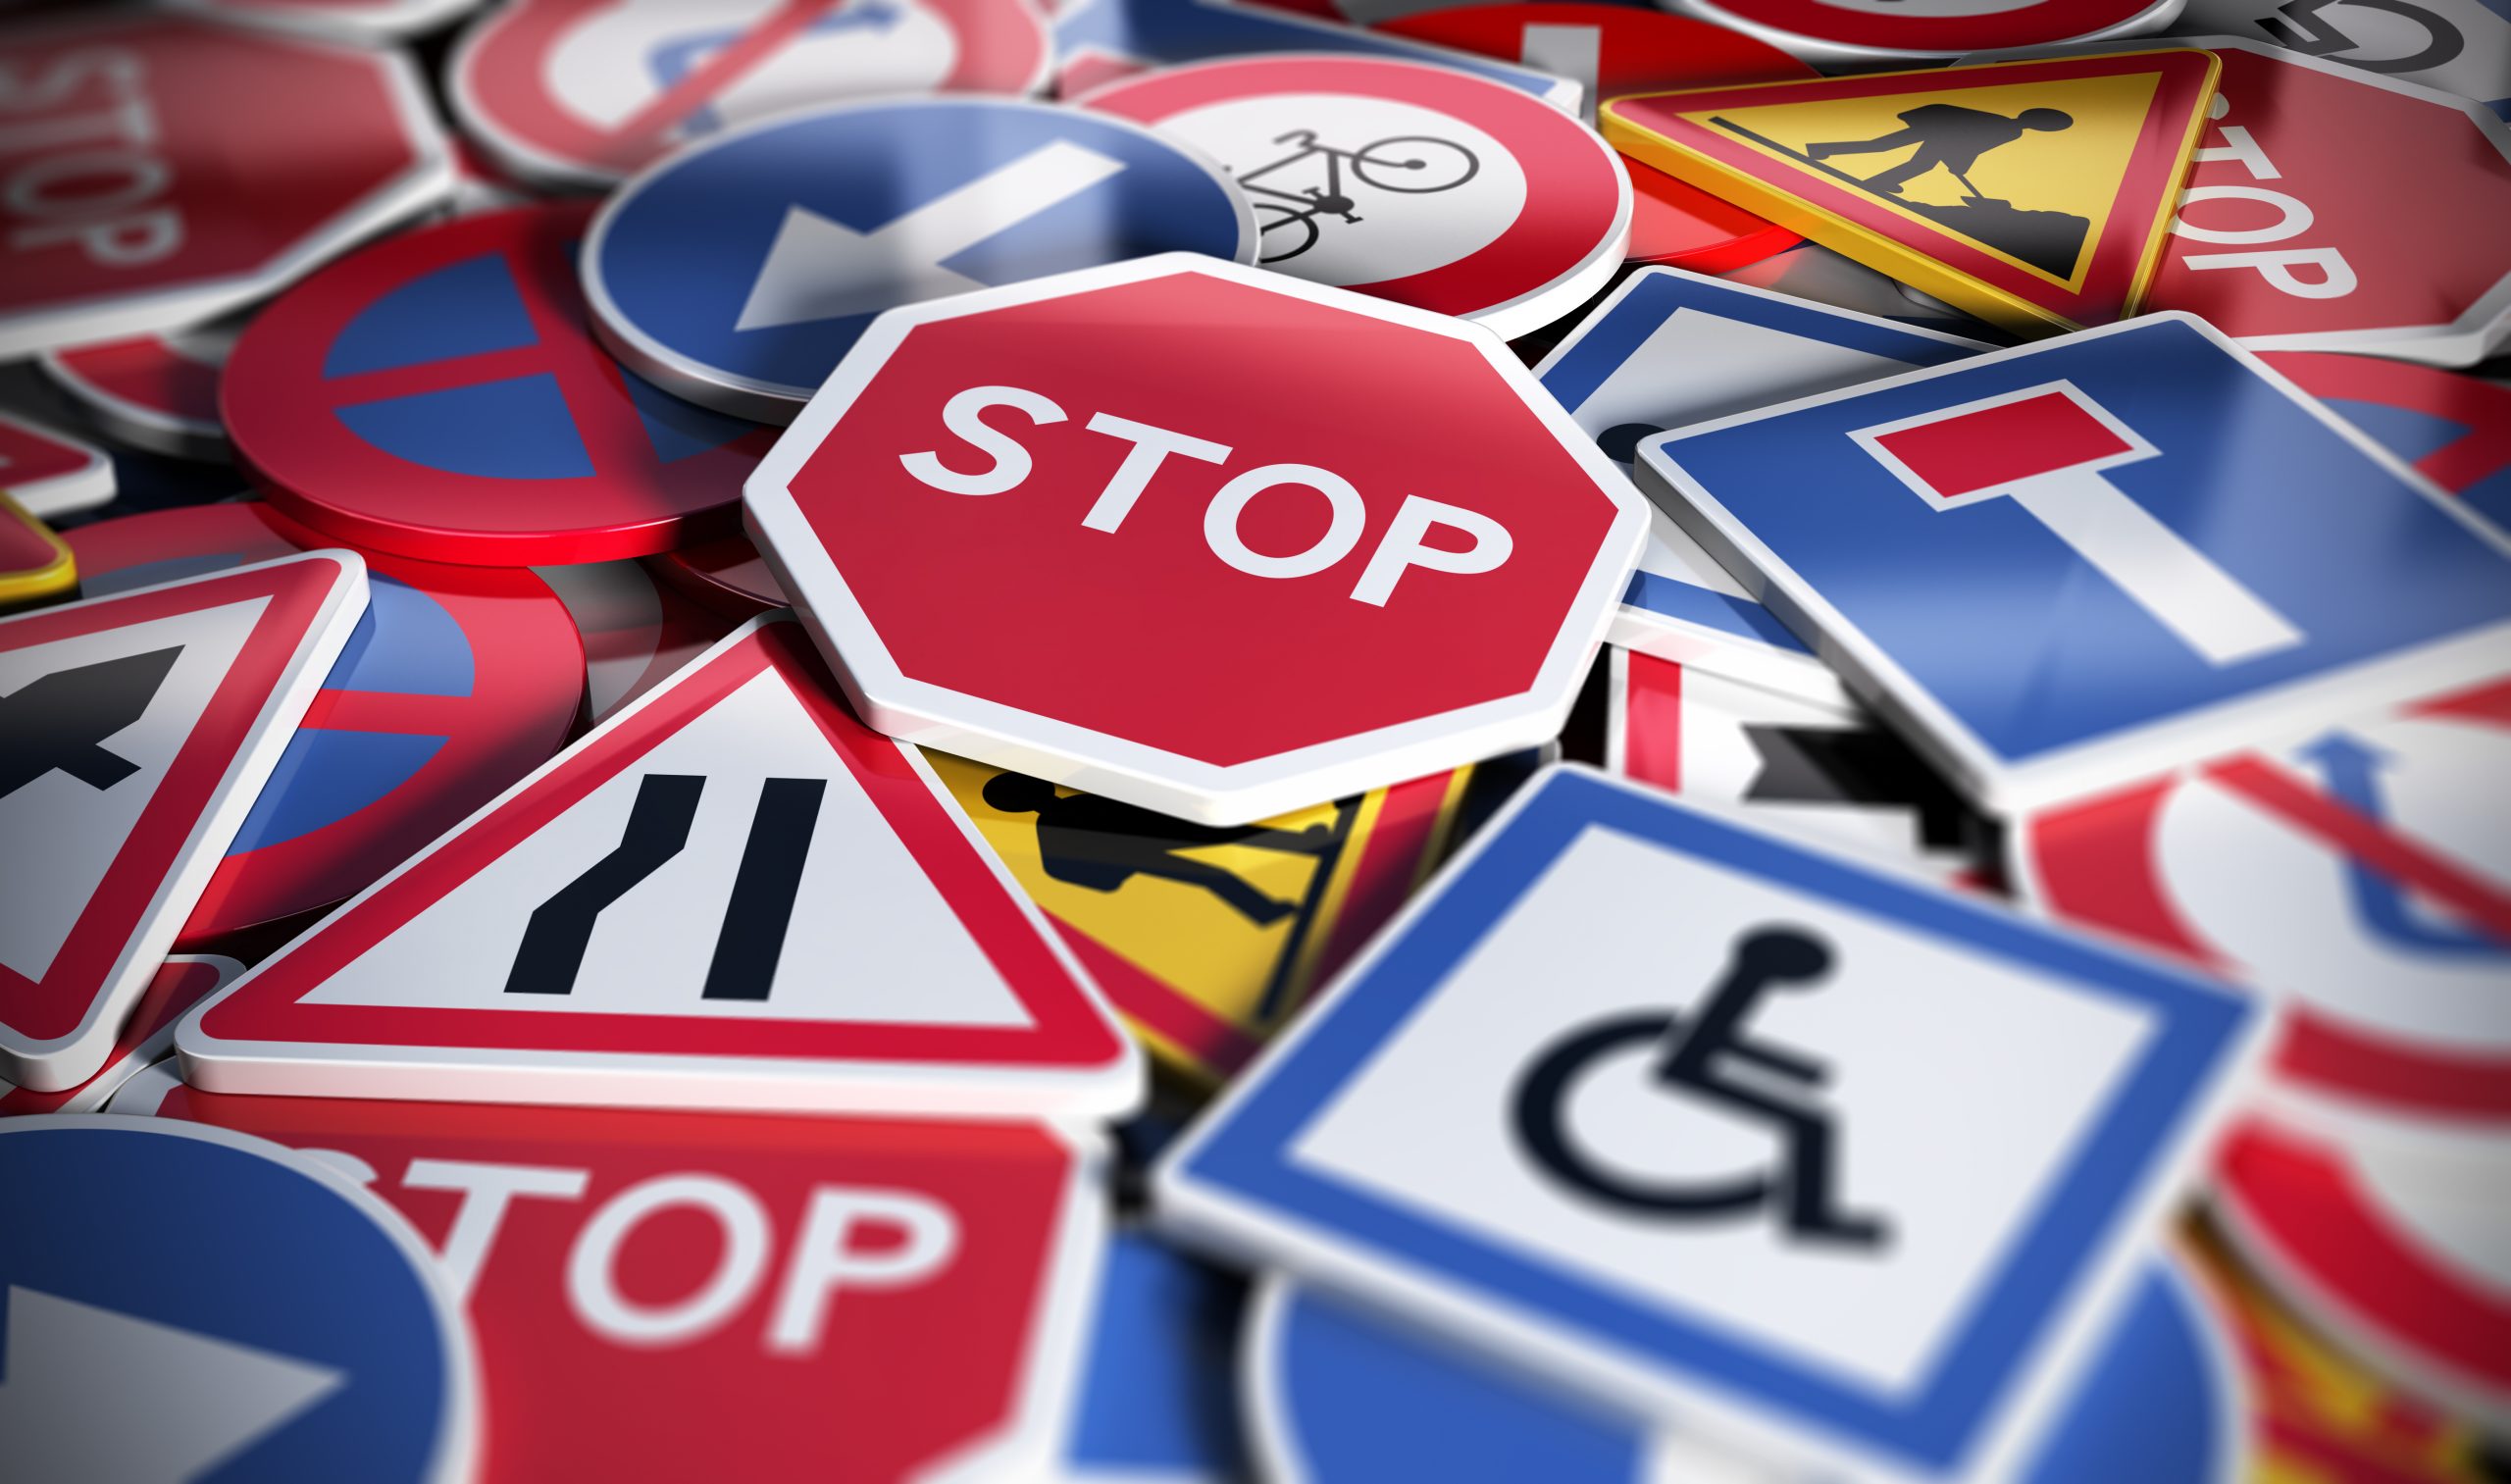 Trafik Adabı ve Kuralları Hakkında Bilgi Sahibi Olmak Neden Önemlidir?